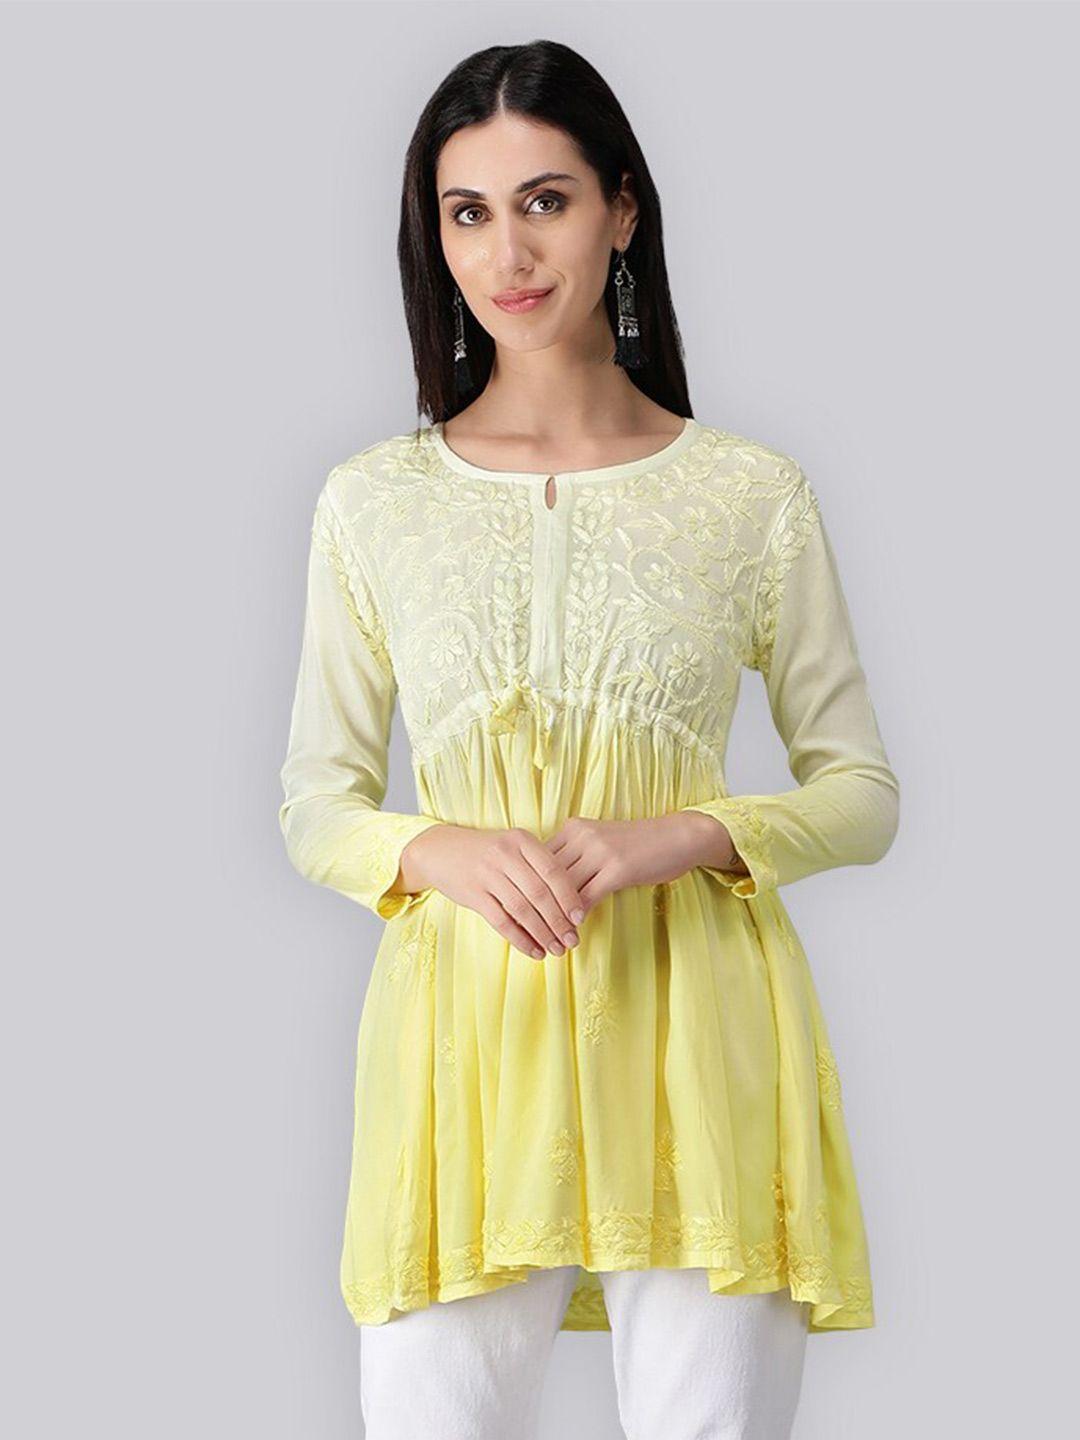 seva-chikan-yellow-&-white-ethnic-motifs-embroidered-chikankari-handloom-chikankari-kurti